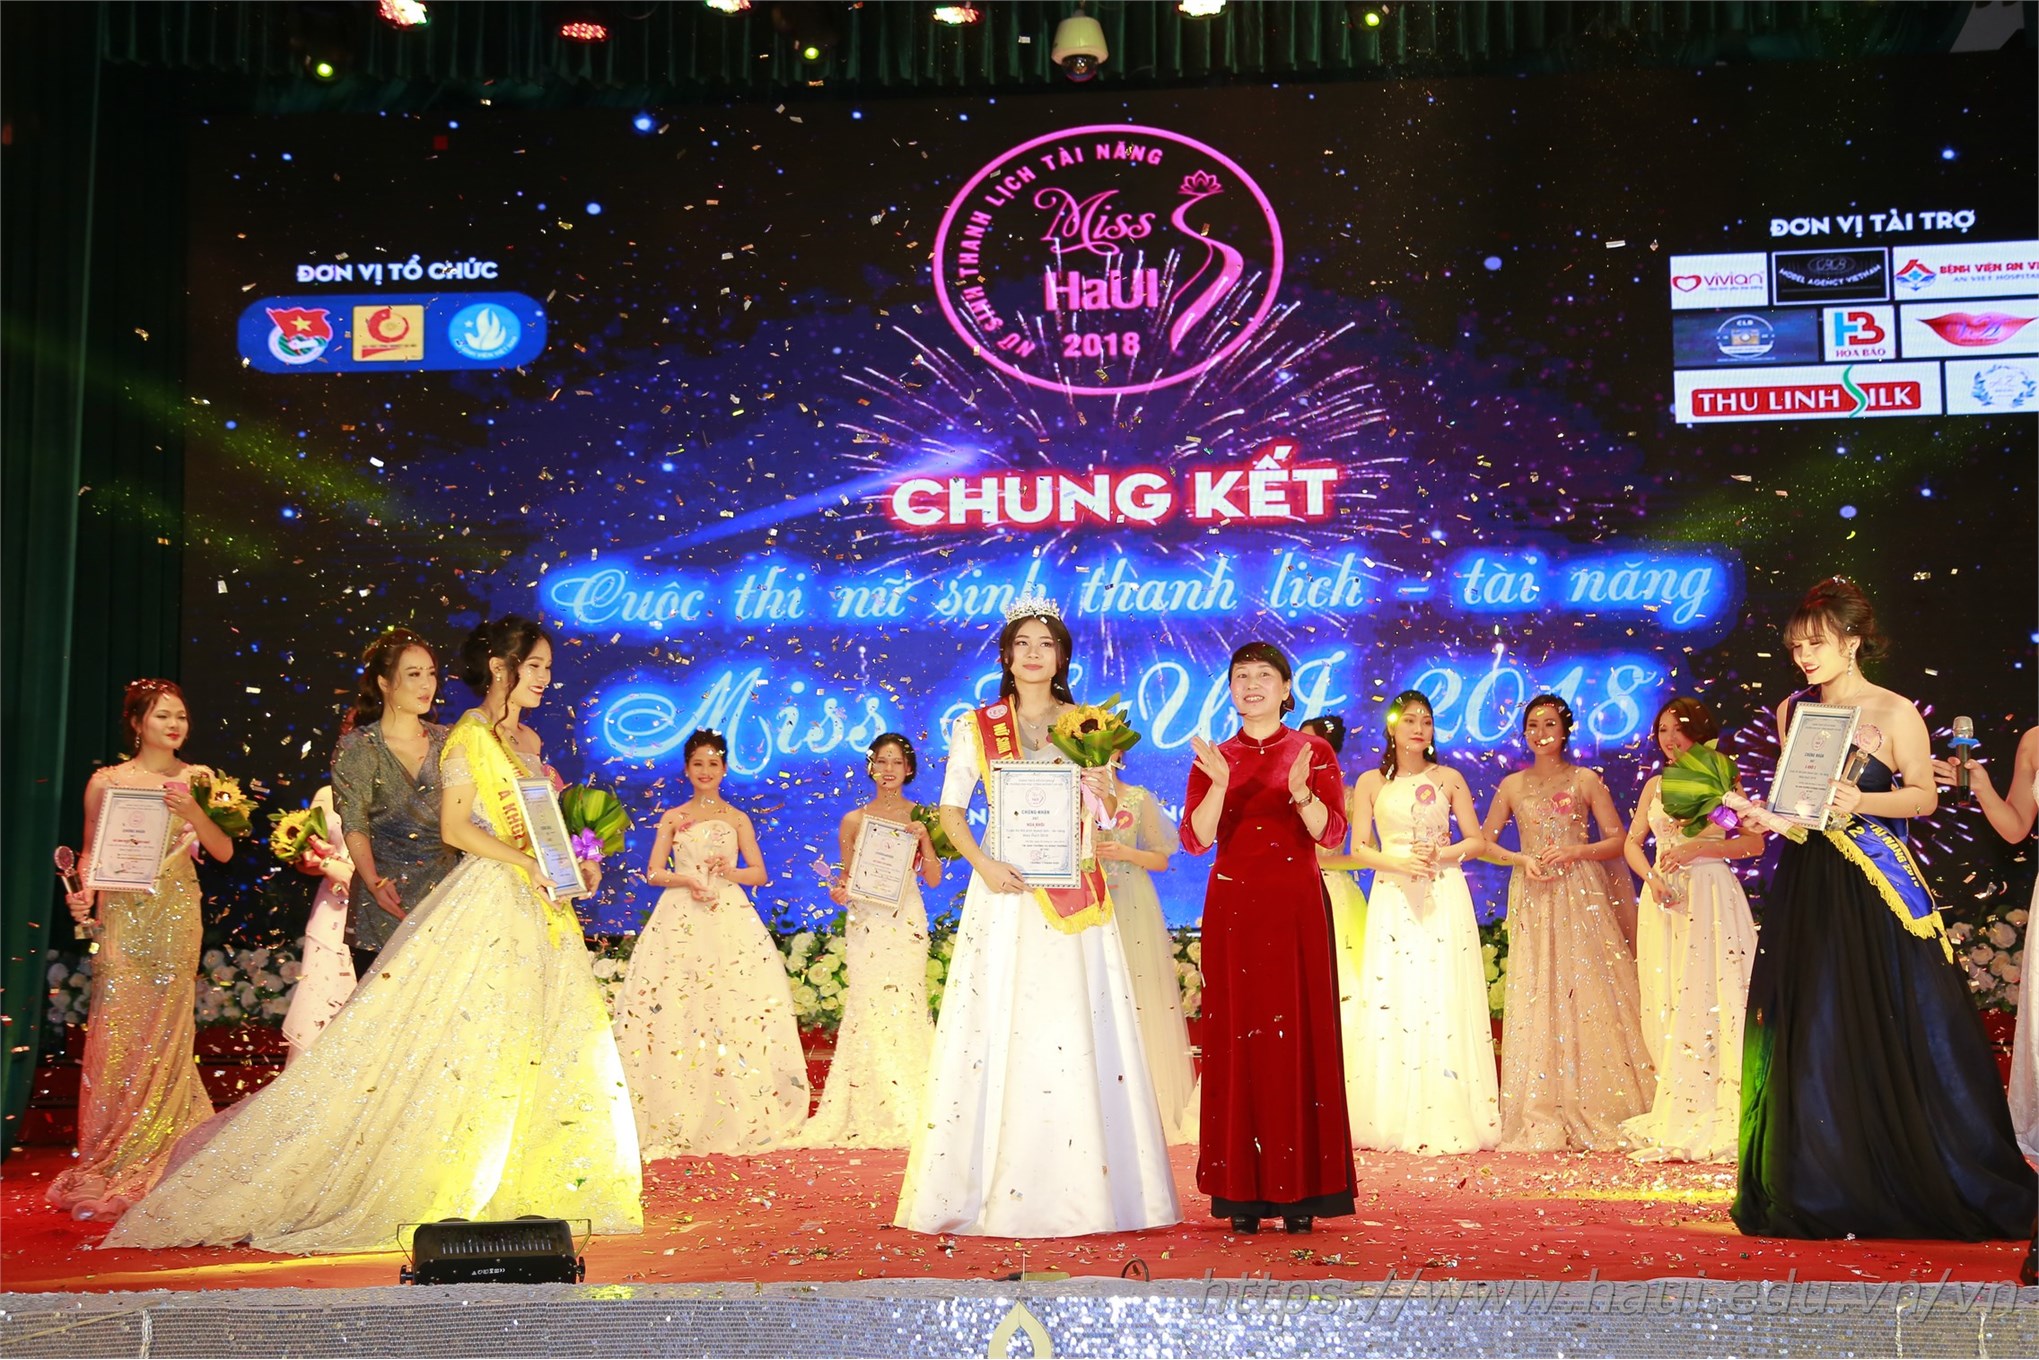 Chung kết Cuộc thi Nữ sinh thanh lịch - tài năng “Miss HaUI 2018”